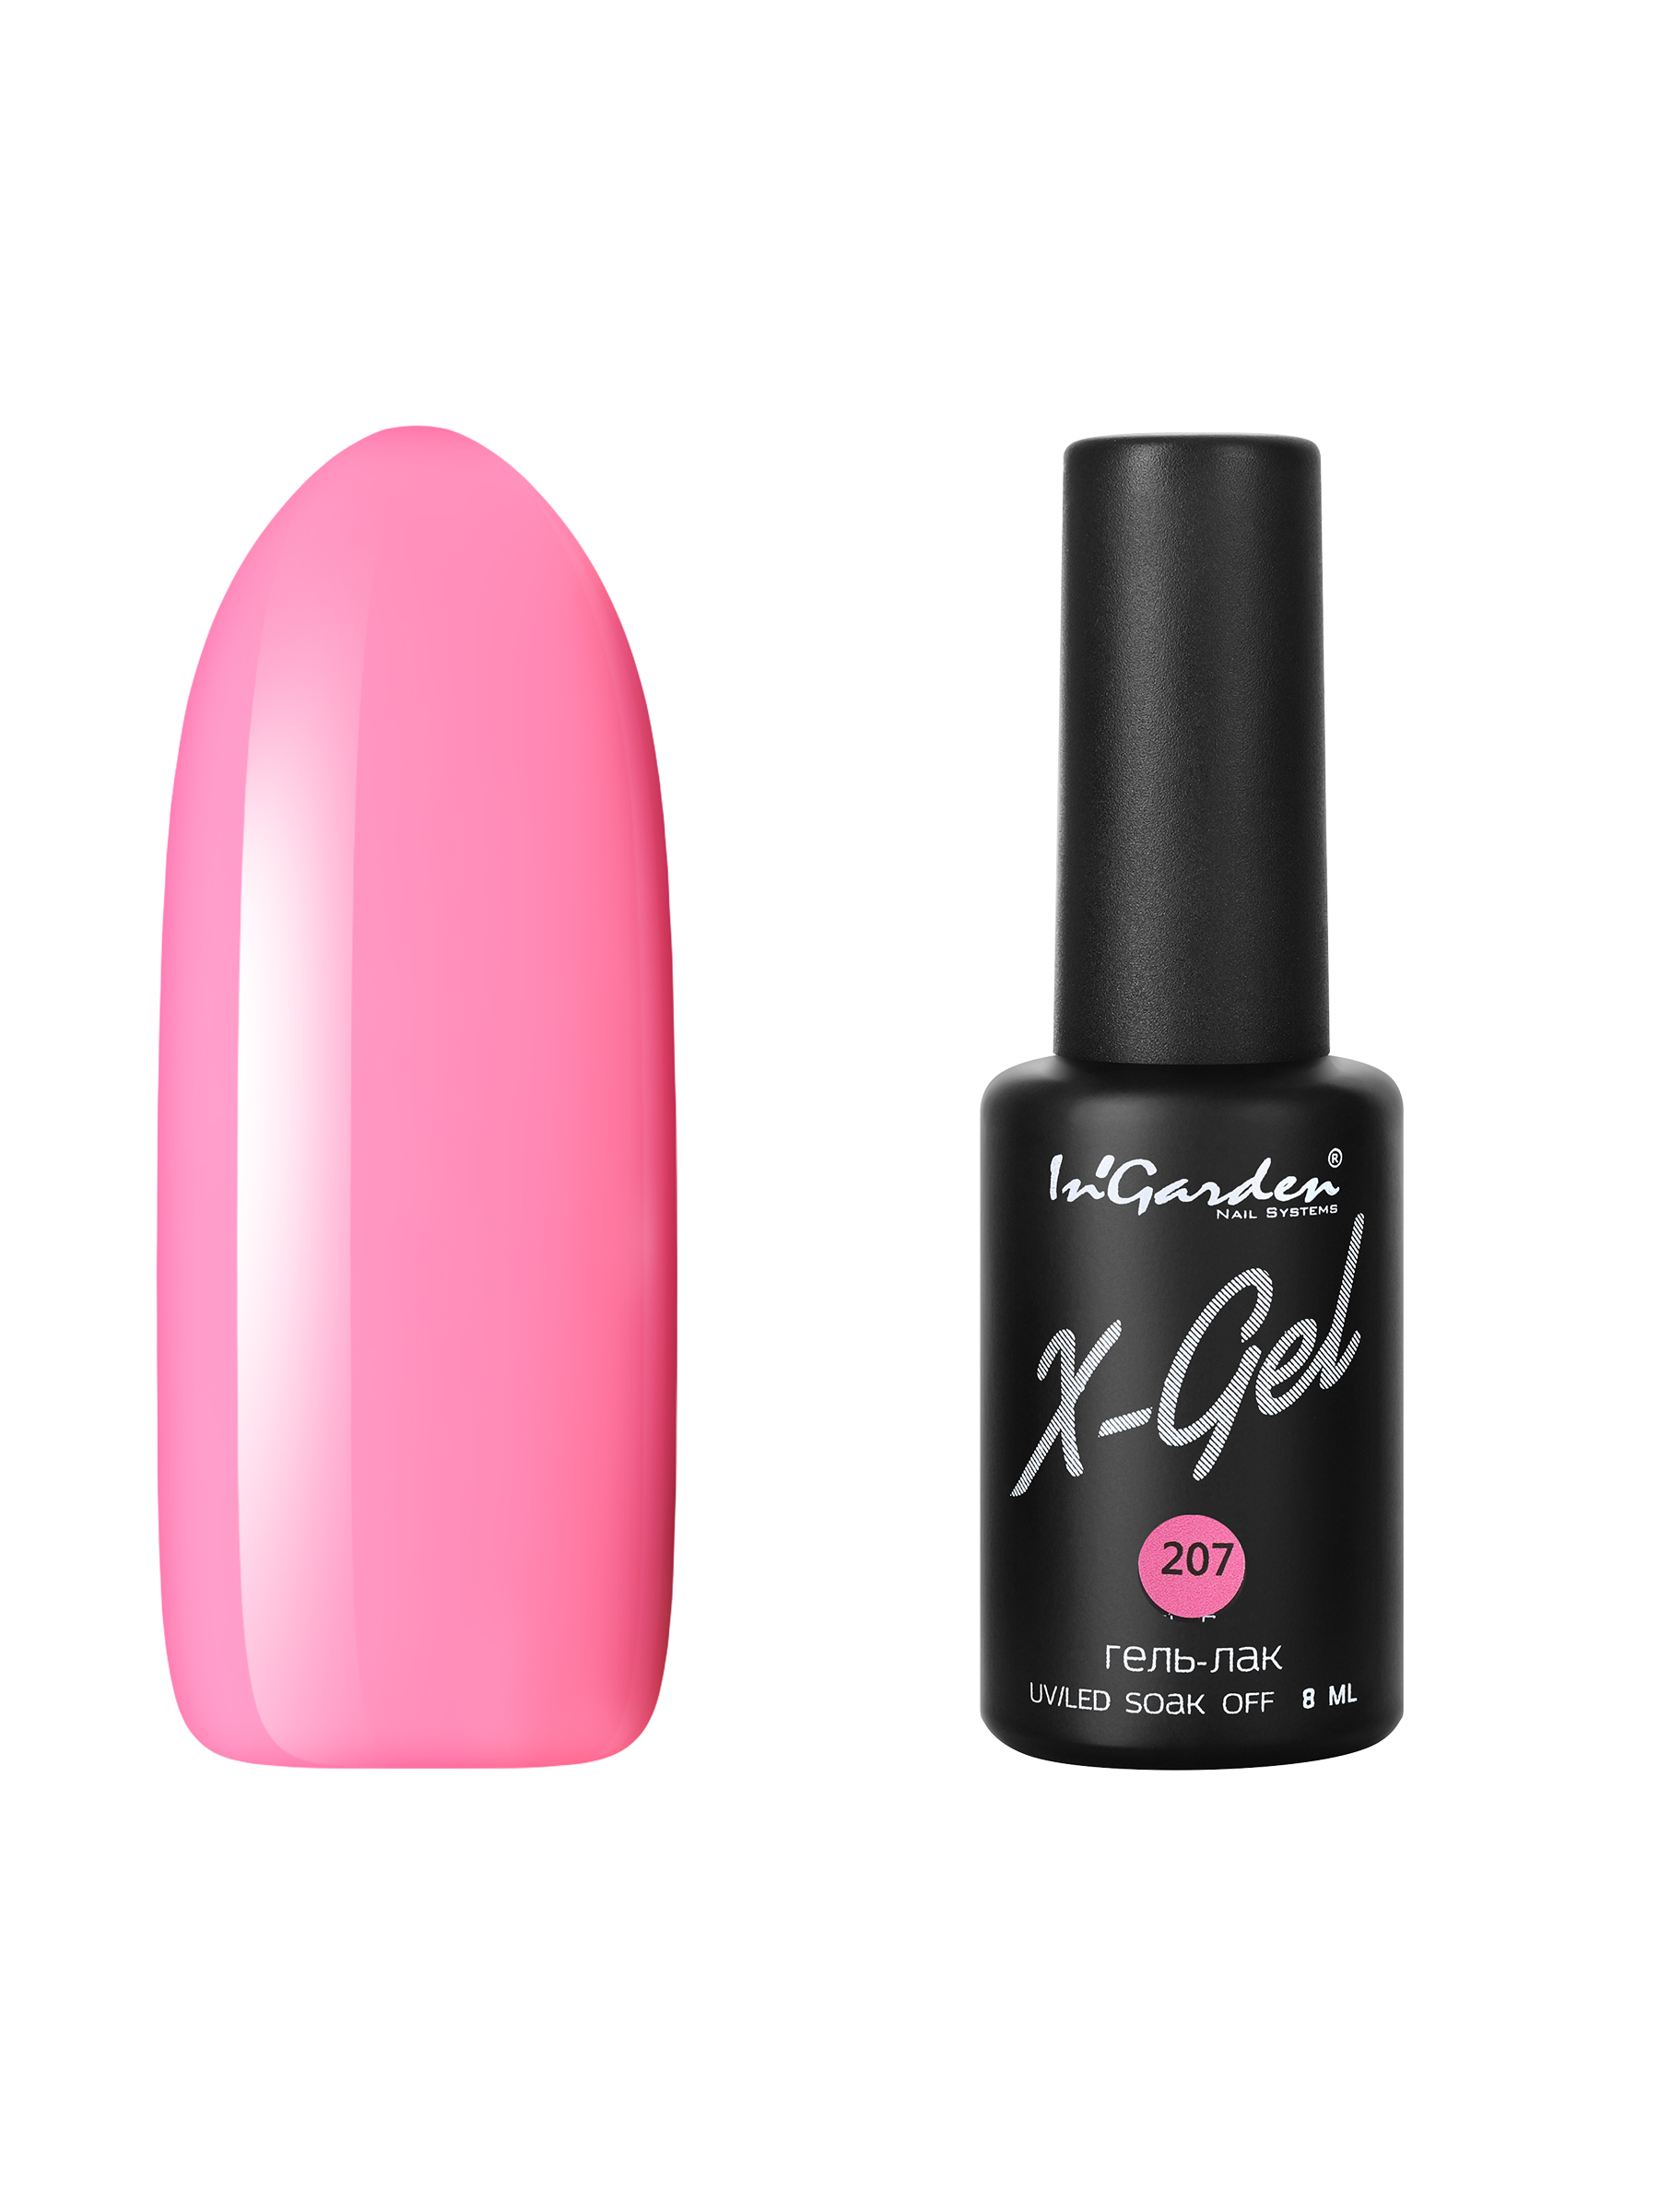 Купить Гель лак для ногтей In’Garden X-Gel N° 207 яркий розовый плотный 8 мл, In'Garden